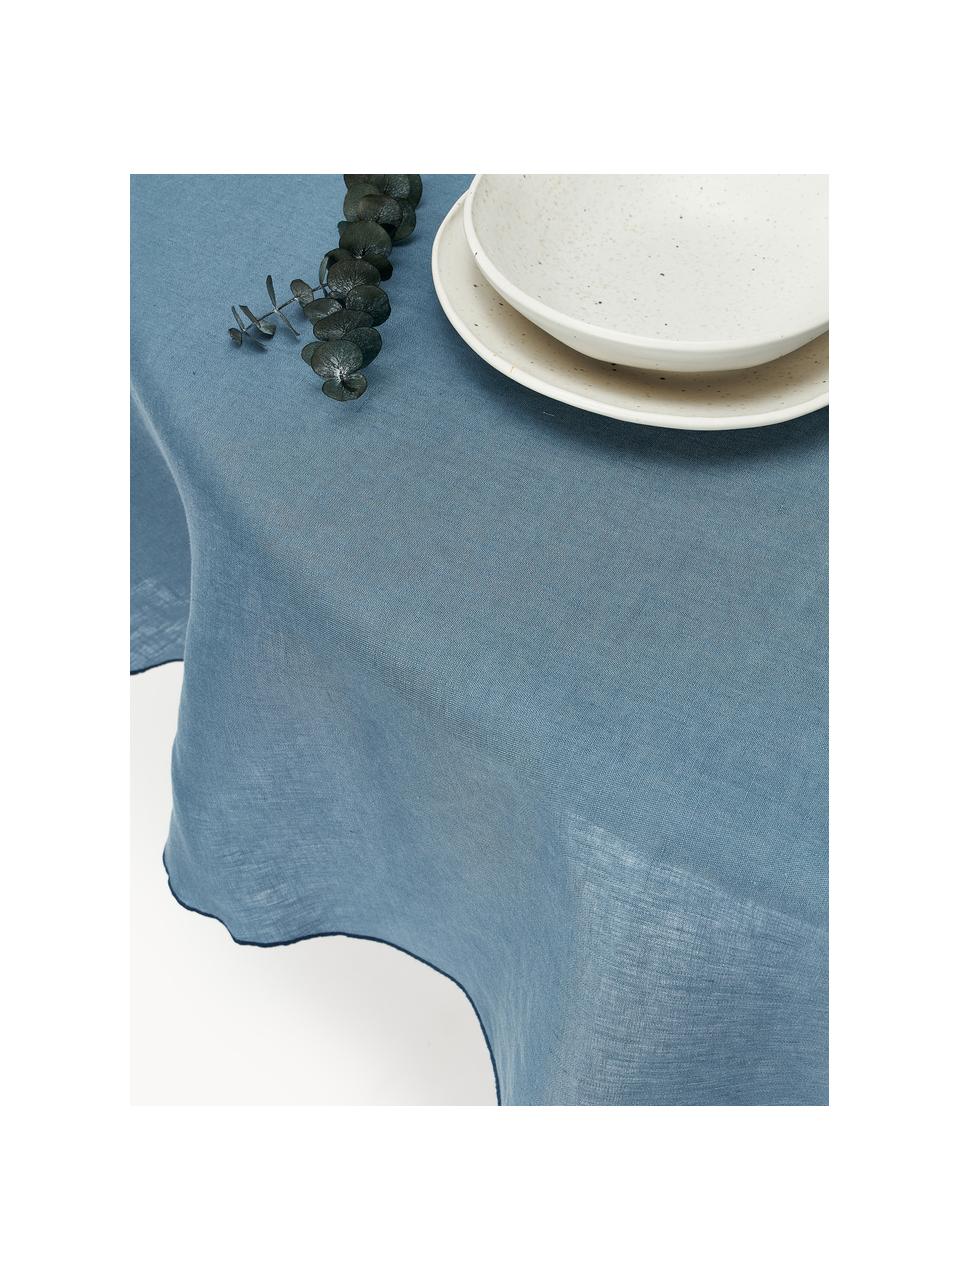 Ronde linnen tafelkleed Kennedy met bies, 100% gewassen linnen

Linnen is een natuurlijke vezel die wordt gekenmerkt door ademend vermogen, duurzaamheid en zachtheid.

Het materiaal dat in dit product wordt gebruikt, is getest op schadelijke stoffen en gecertificeerd volgens STANDARD 100 door OEKO-TEX®, 6760CIT, CITEVE, Grijsblauw, donkerblauw, 4-6 personen (Ø 180 cm)